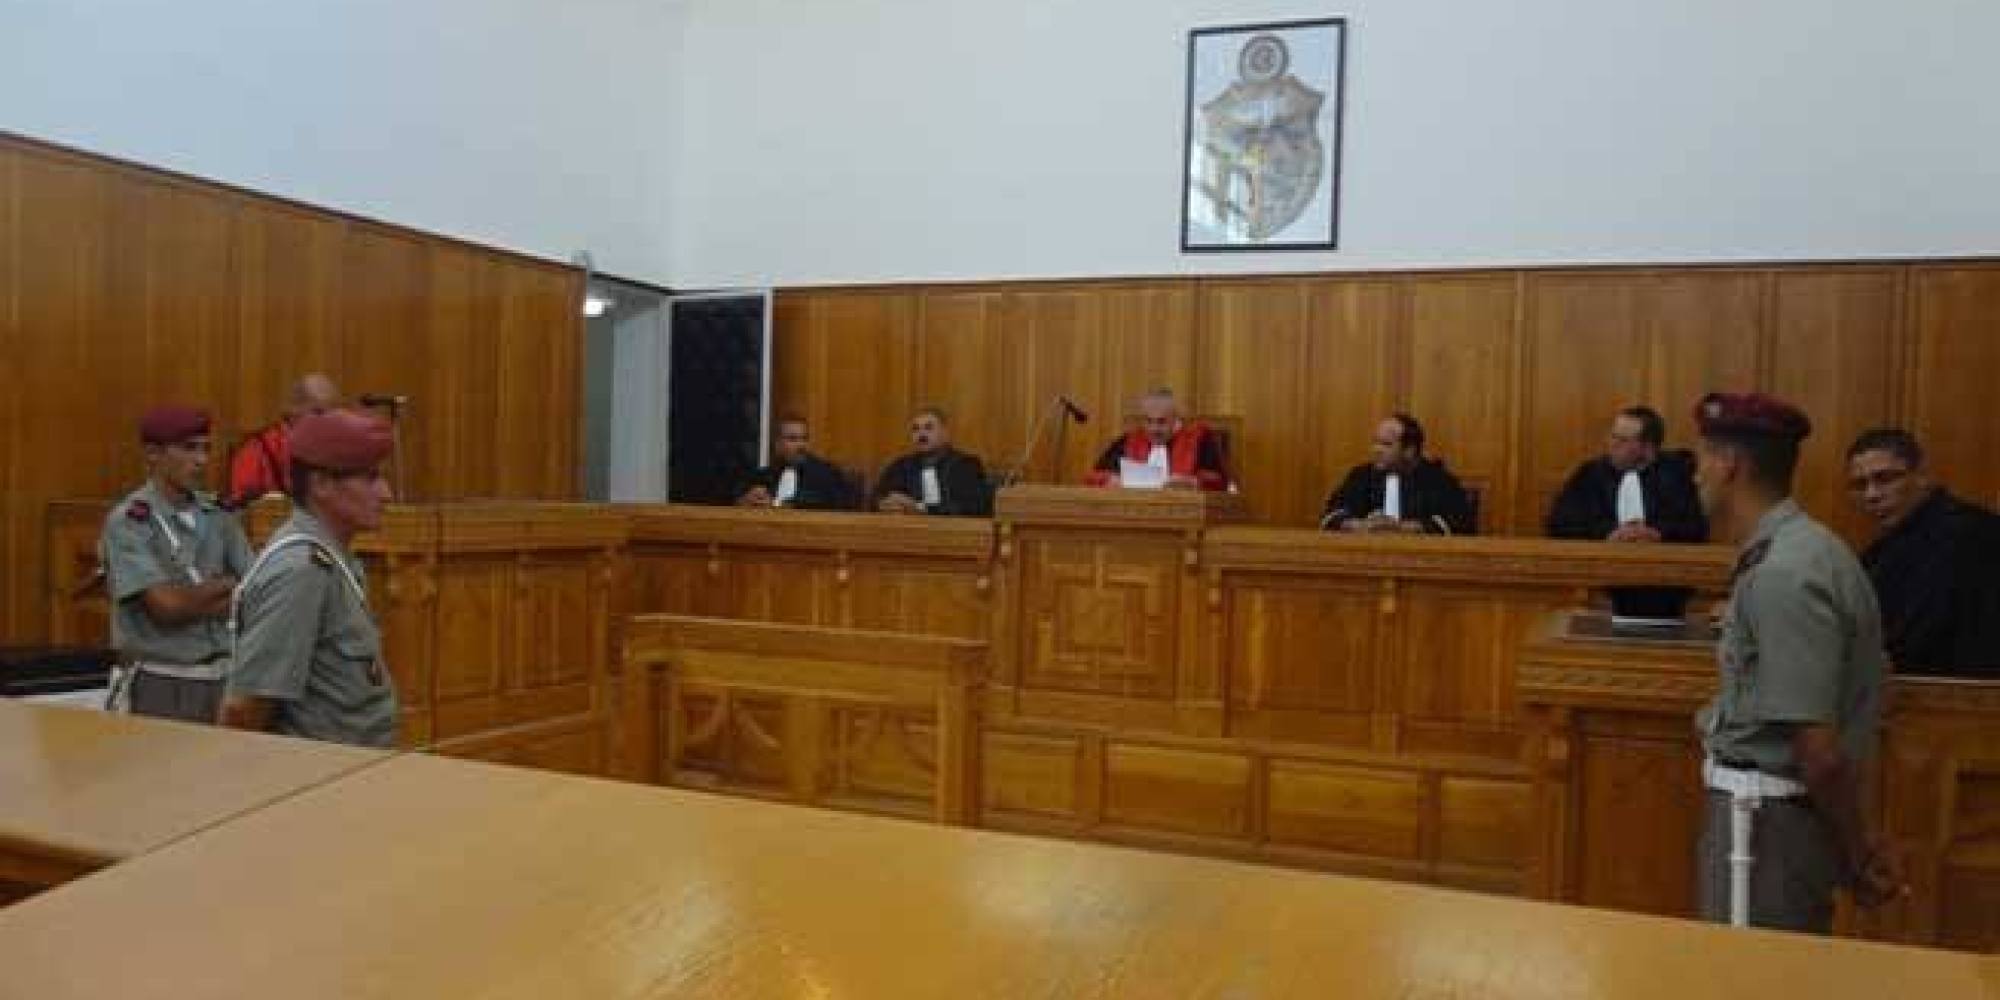 Tunisie: Reprise du travail dans les tribunaux à partir d’aujourd’hui